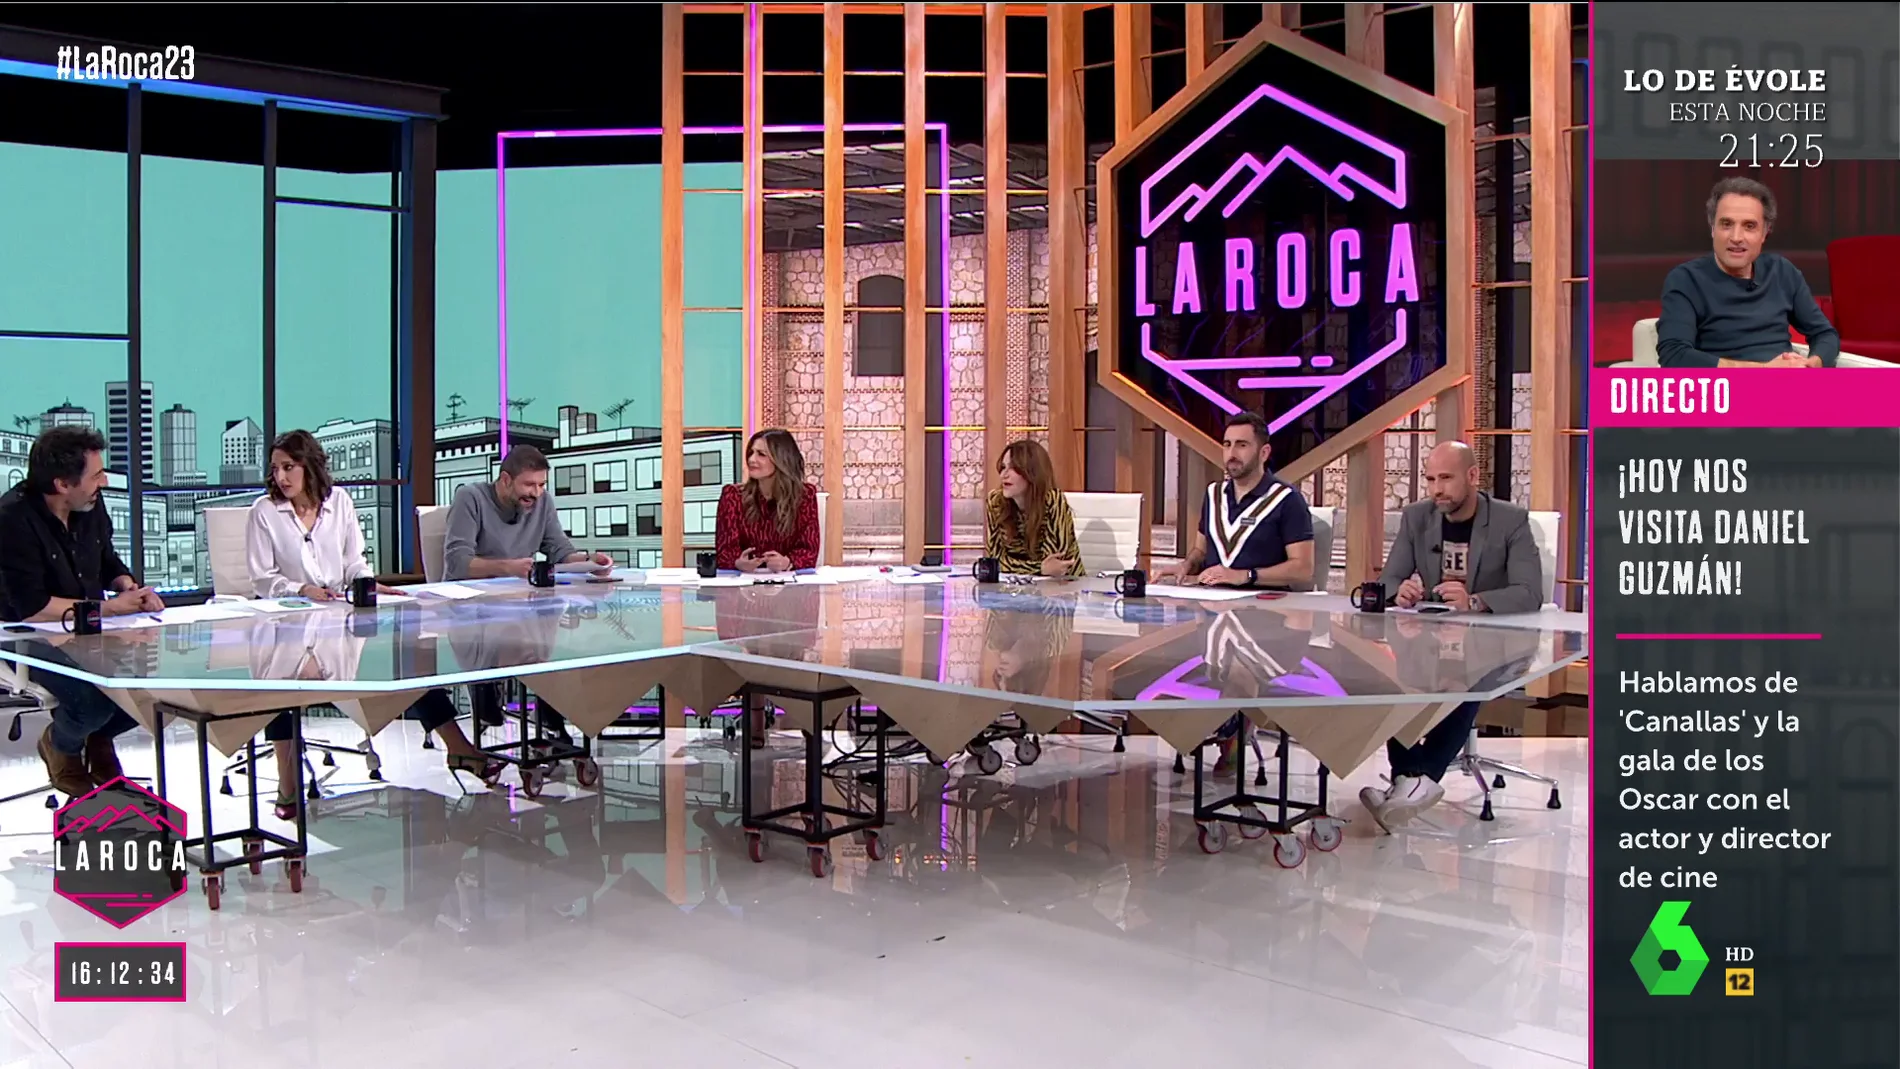 El divertido pique de Nuria Roca y Juan del Val en directo: "Yo soy la presentadora"